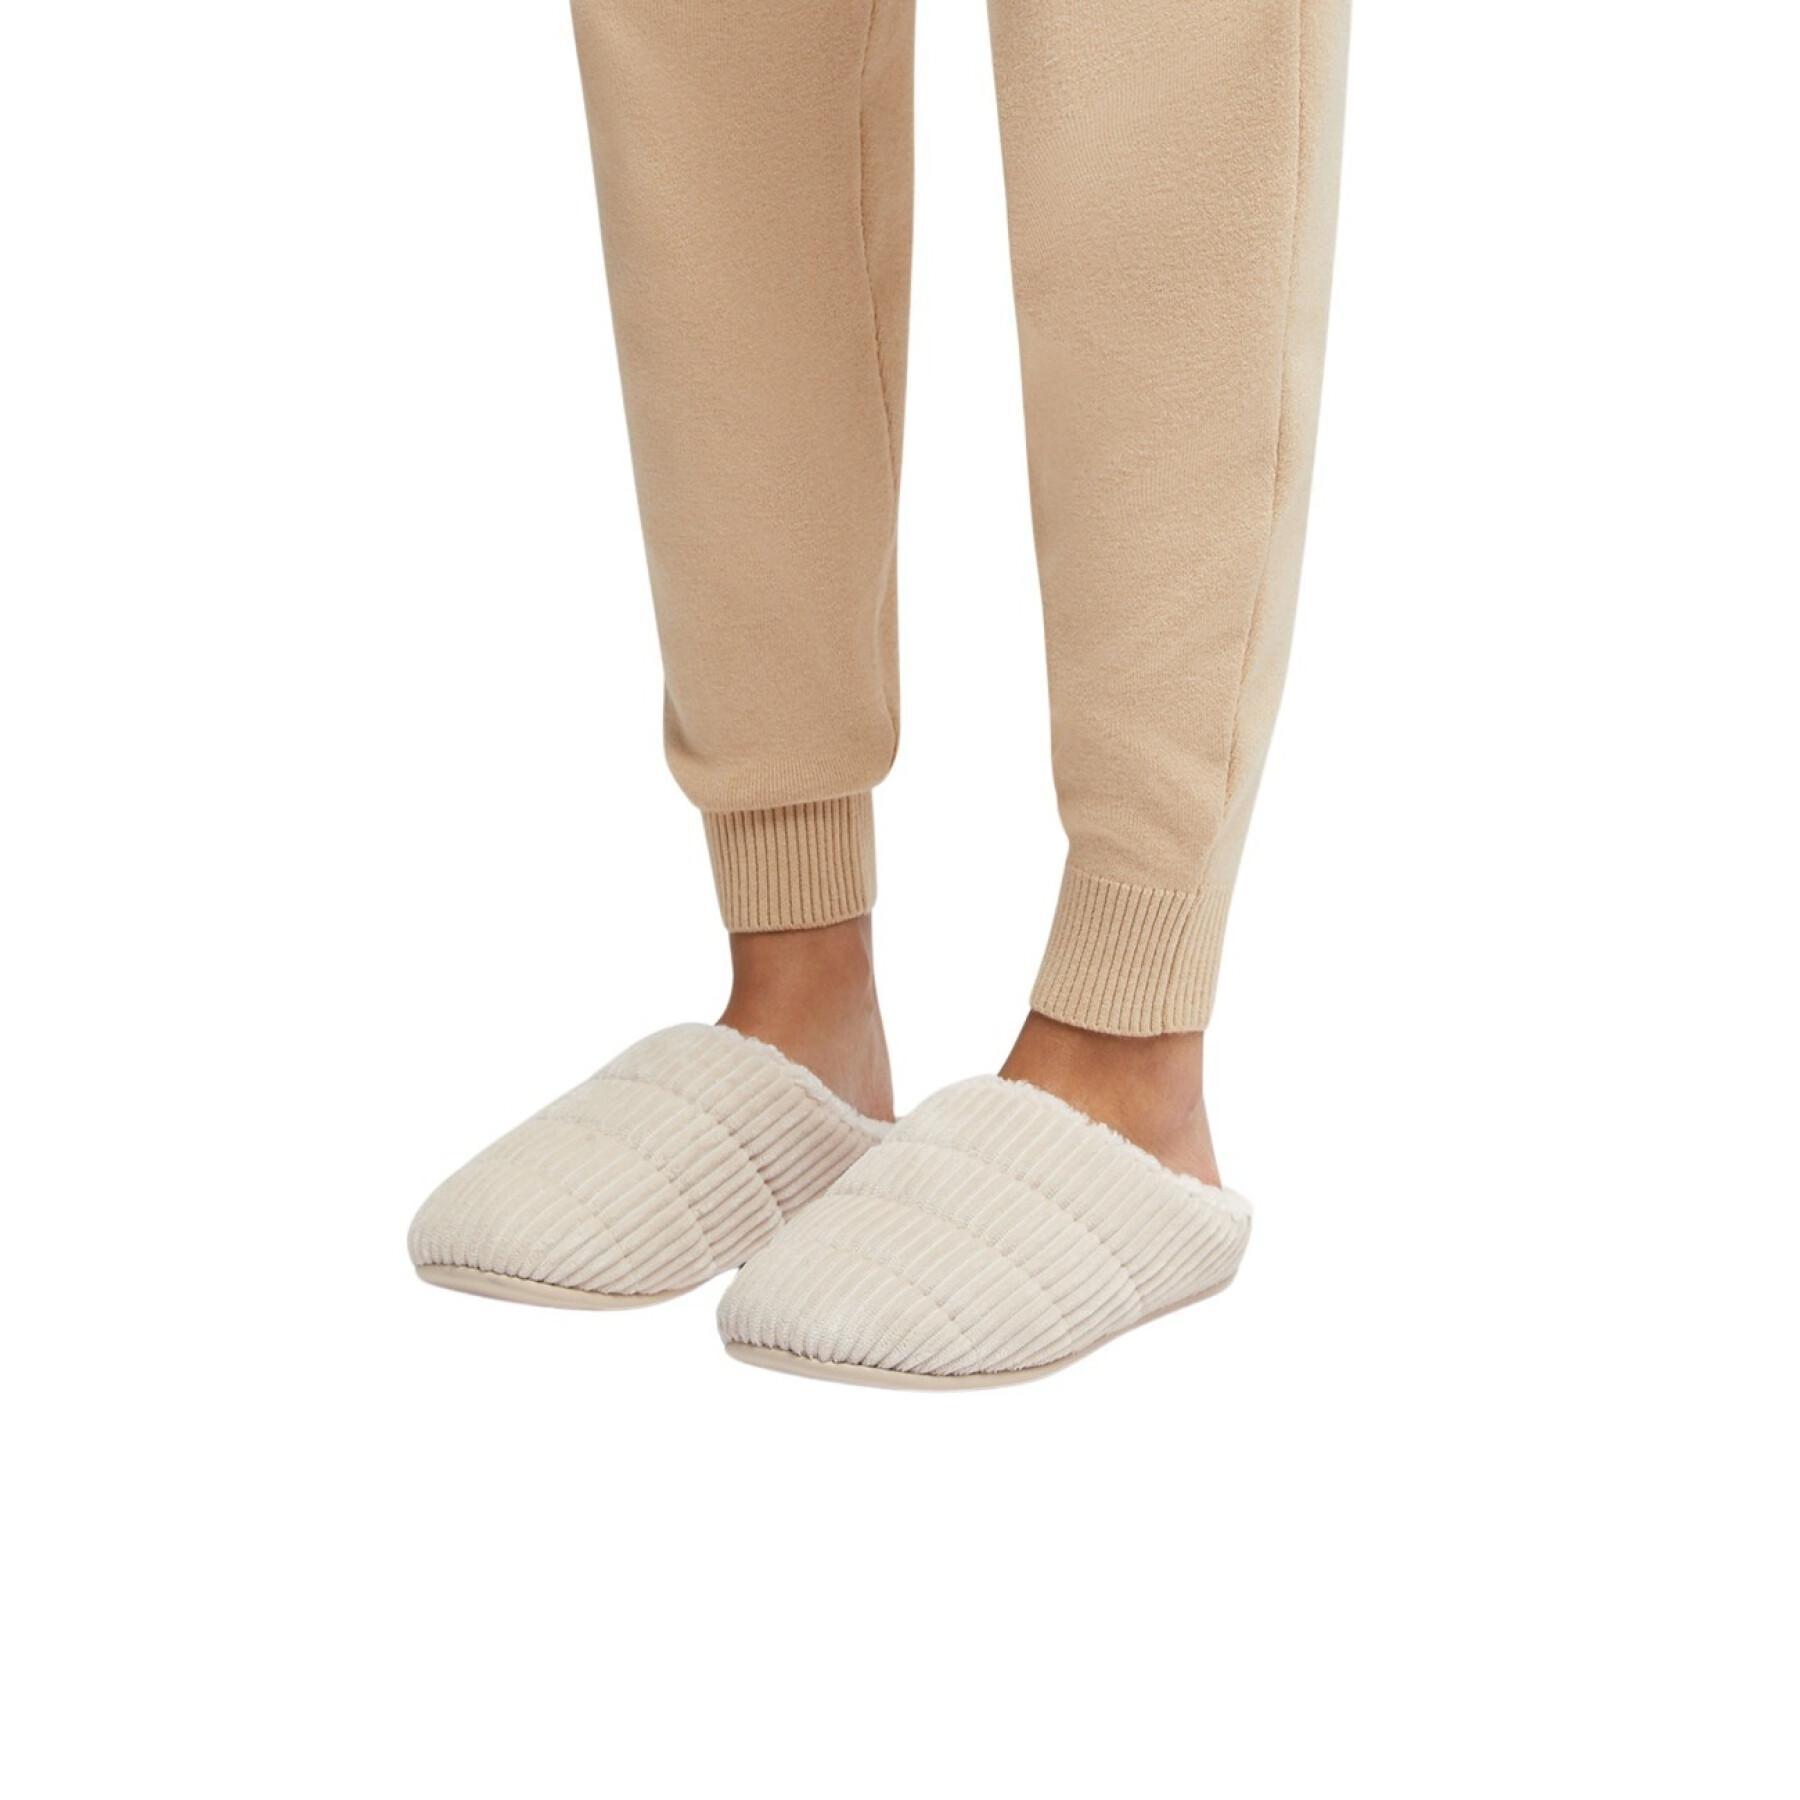 Pantuflas de terciopelo para mujer FitFlop Chrissie